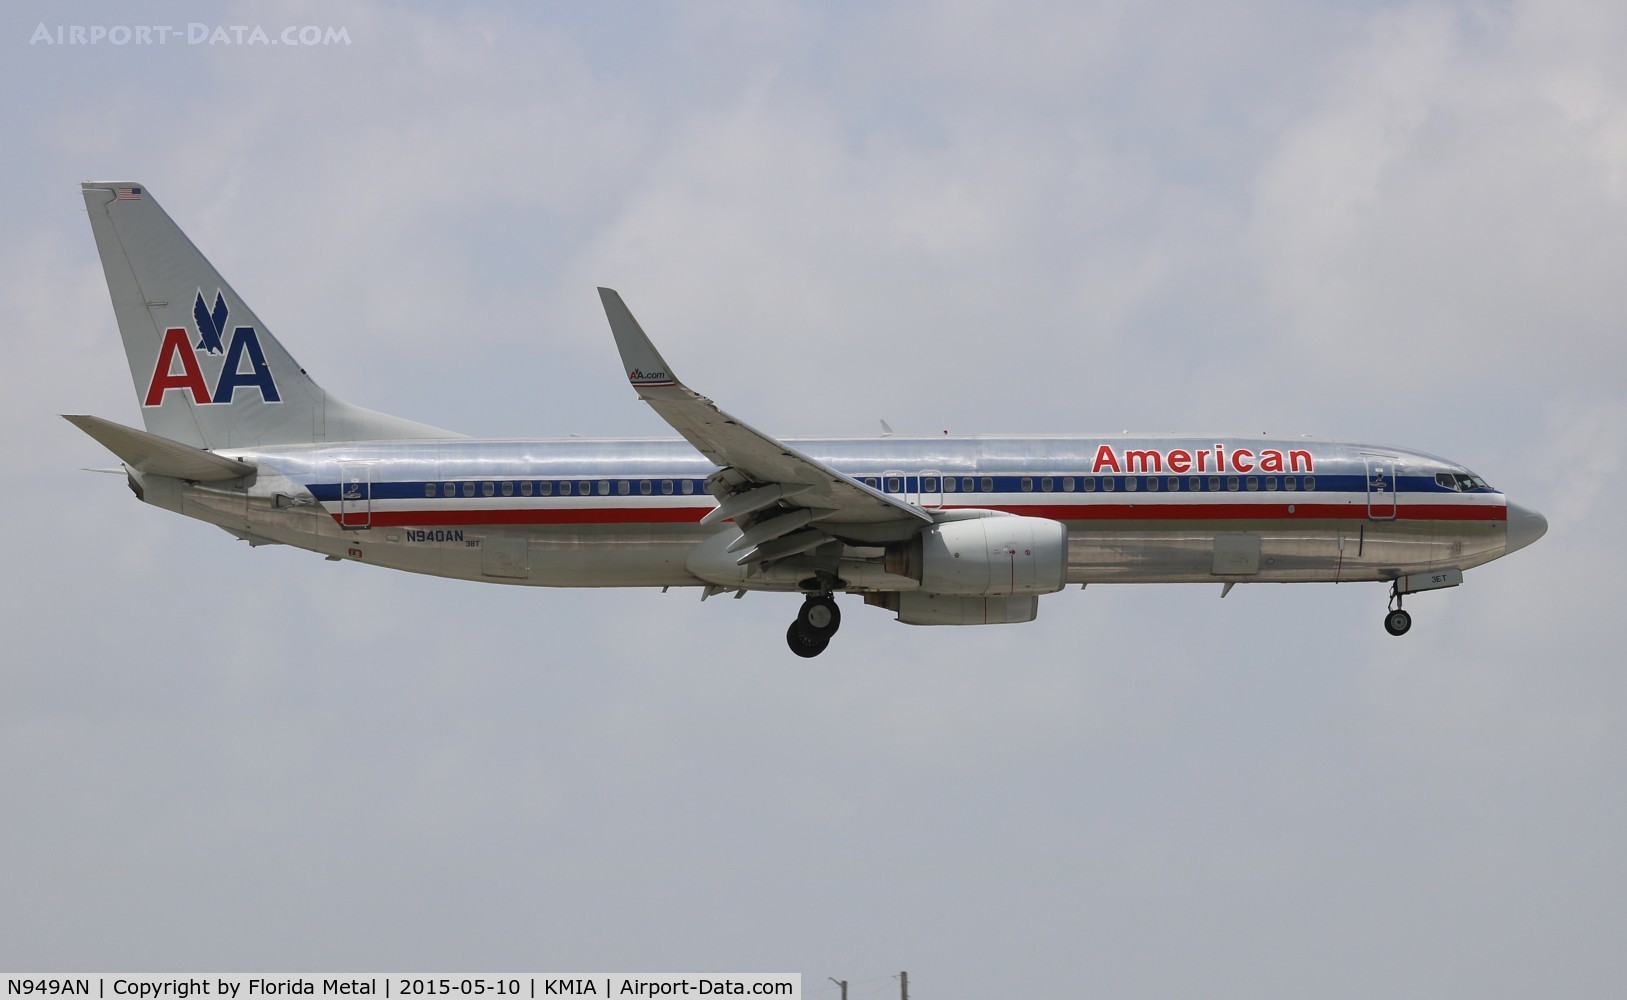 N949AN, 2000 Boeing 737-823 C/N 29537, American